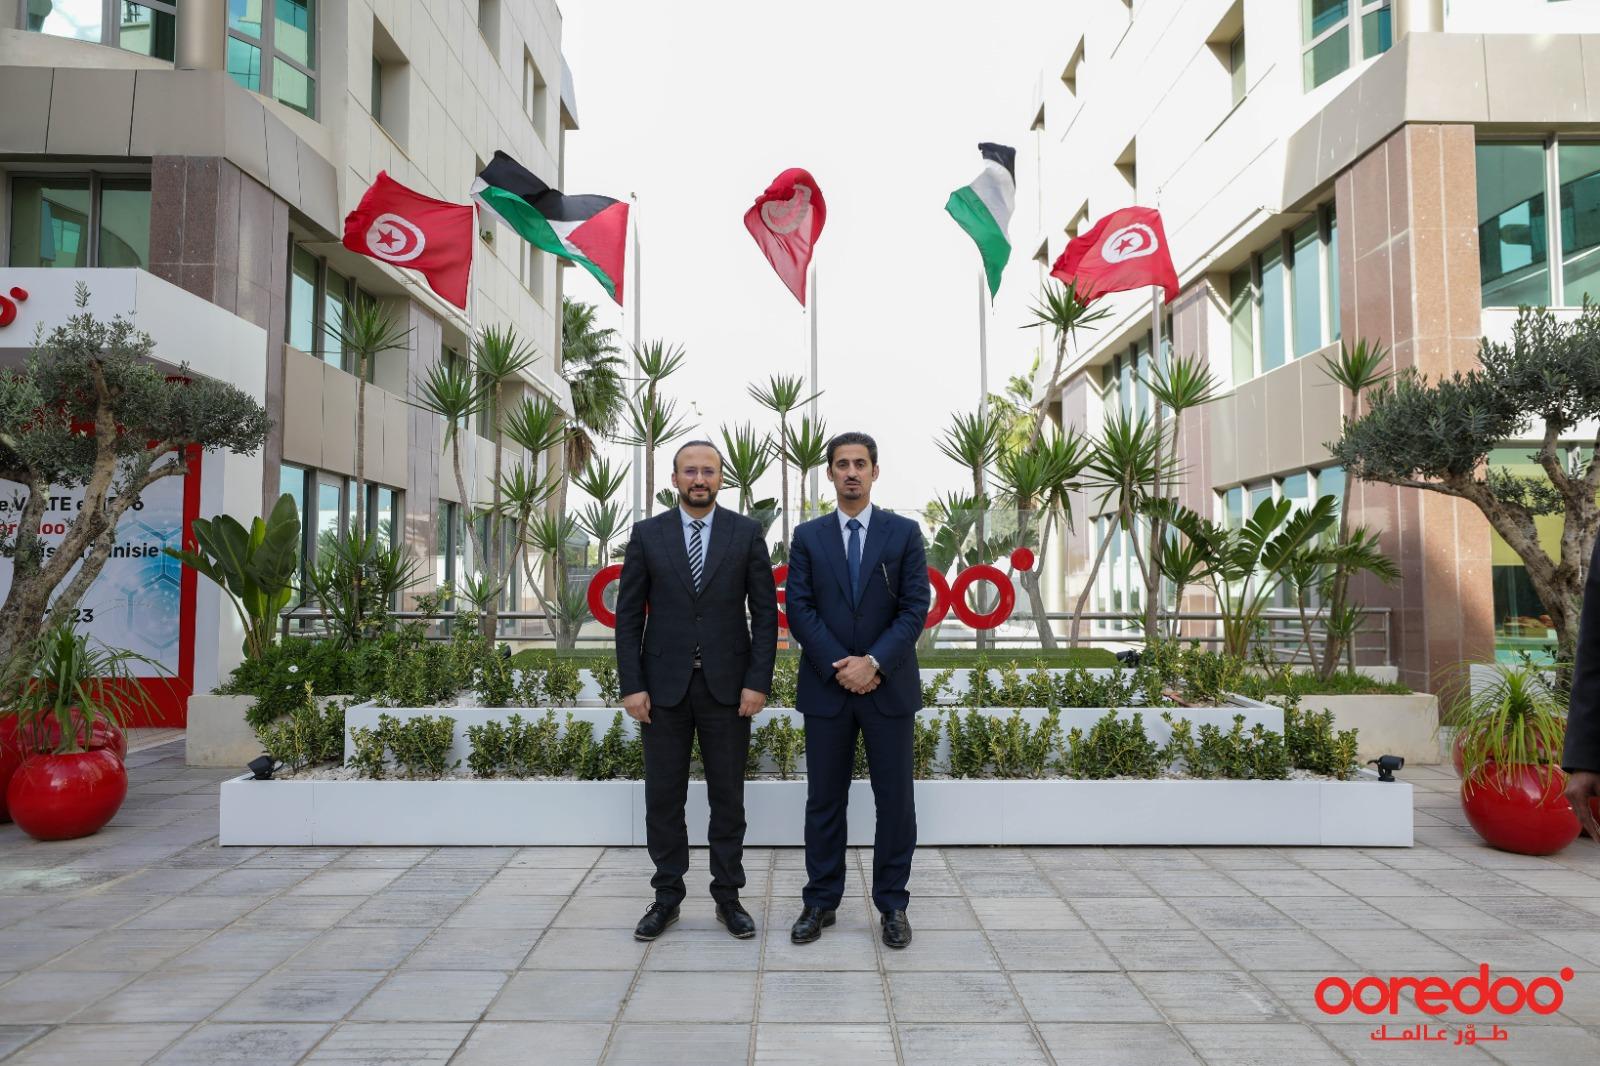 Ooredoo révolutionne les communications en Tunisie avec le déploiement de la VoLTE et de l’IPV6 